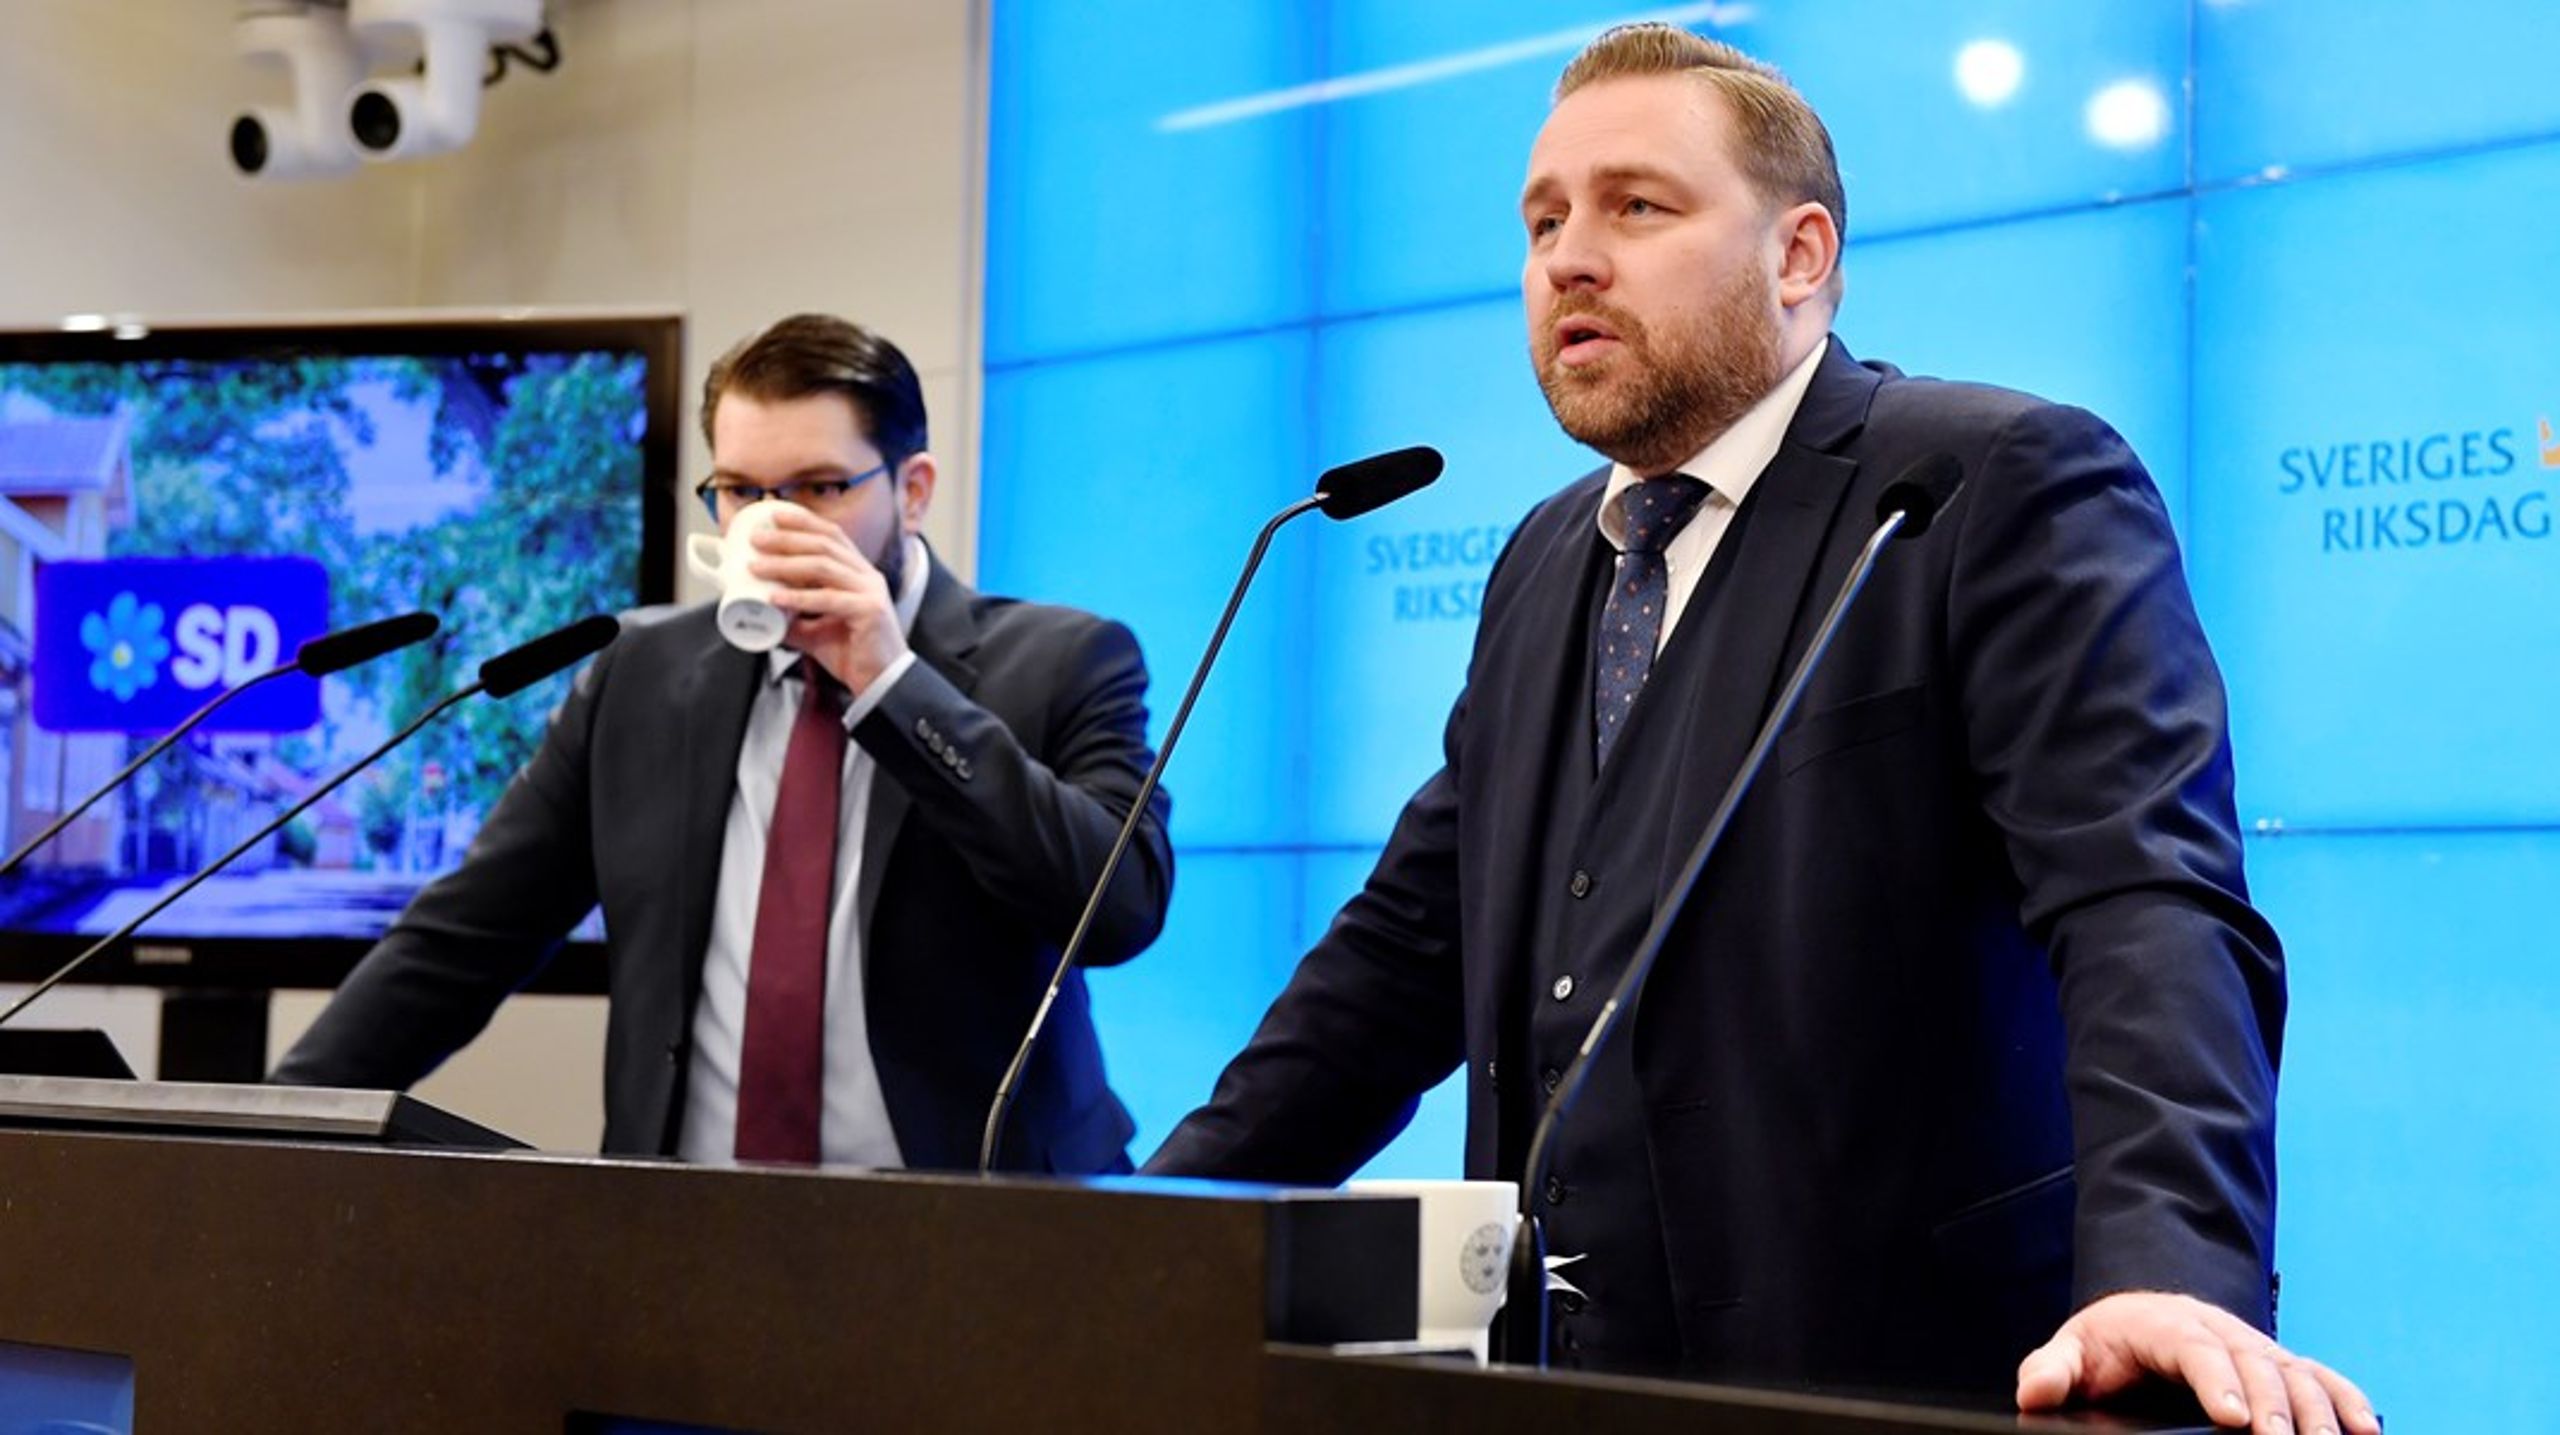 Sverigedemokraternas partiledare Jimmie Åkesson och Mattias Karlsson, partiets nyutnämnda landsbygdspolitiska talesperson.